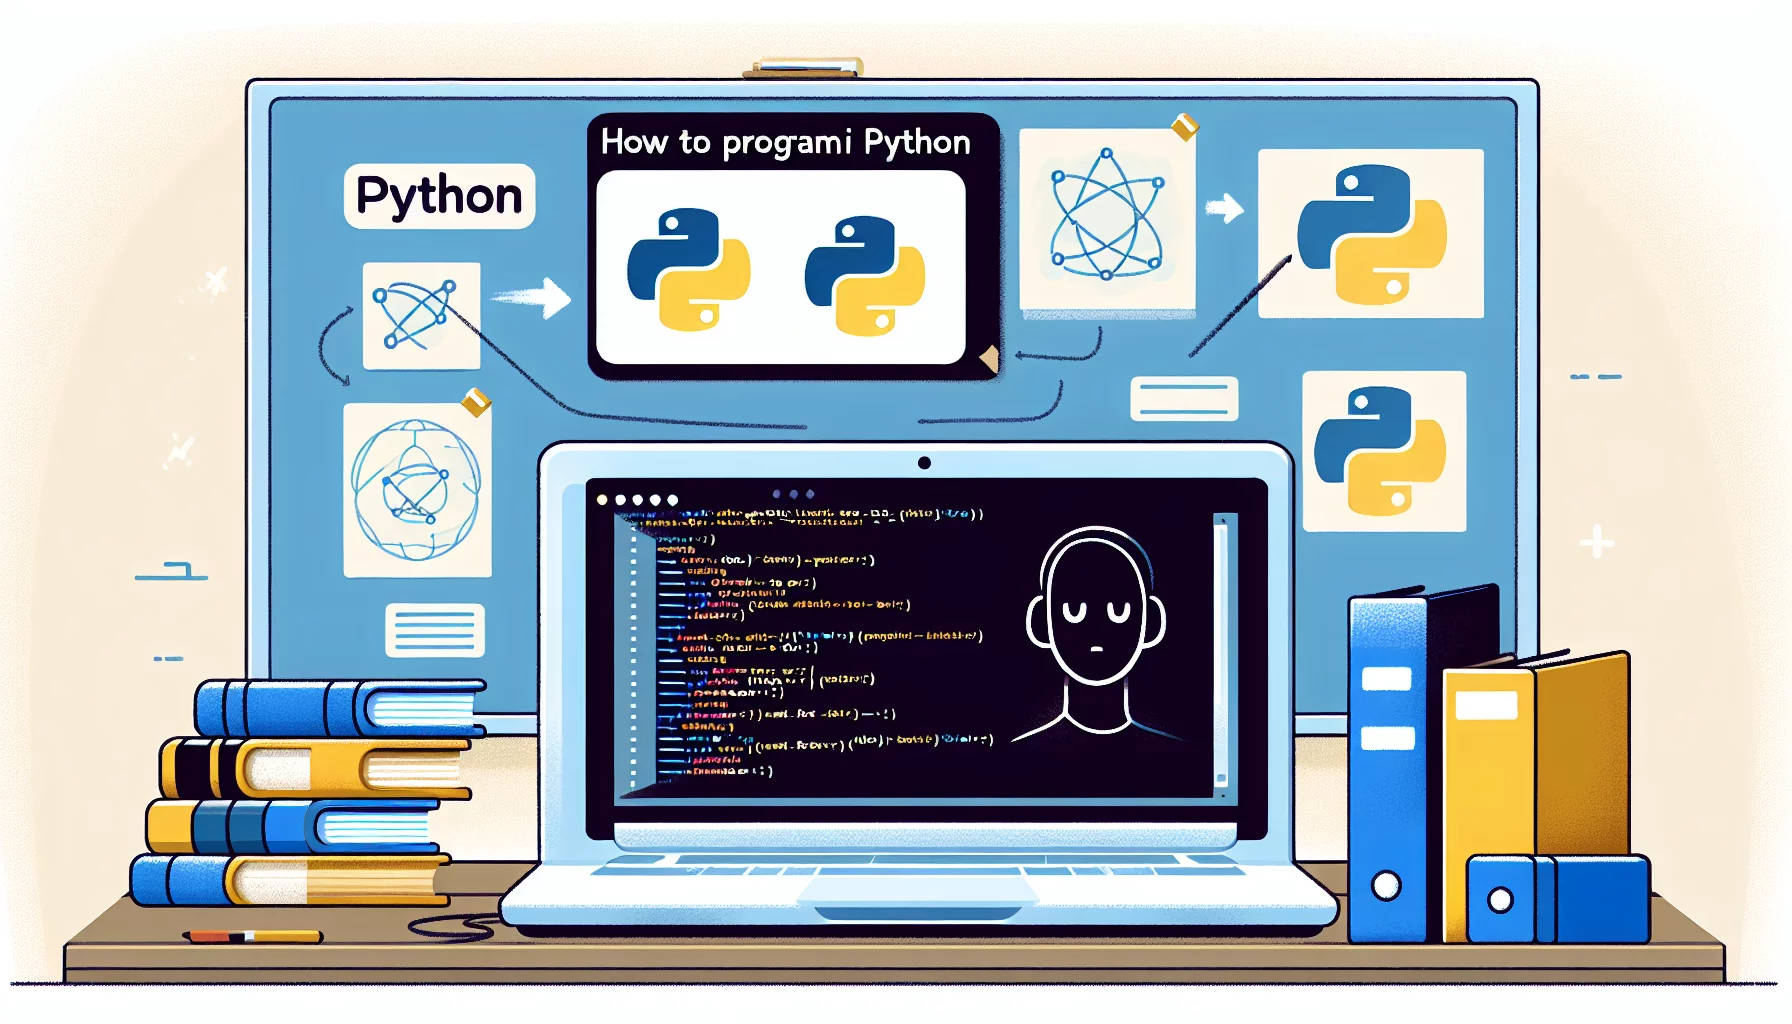 Comment faire pour programmer en Python ?